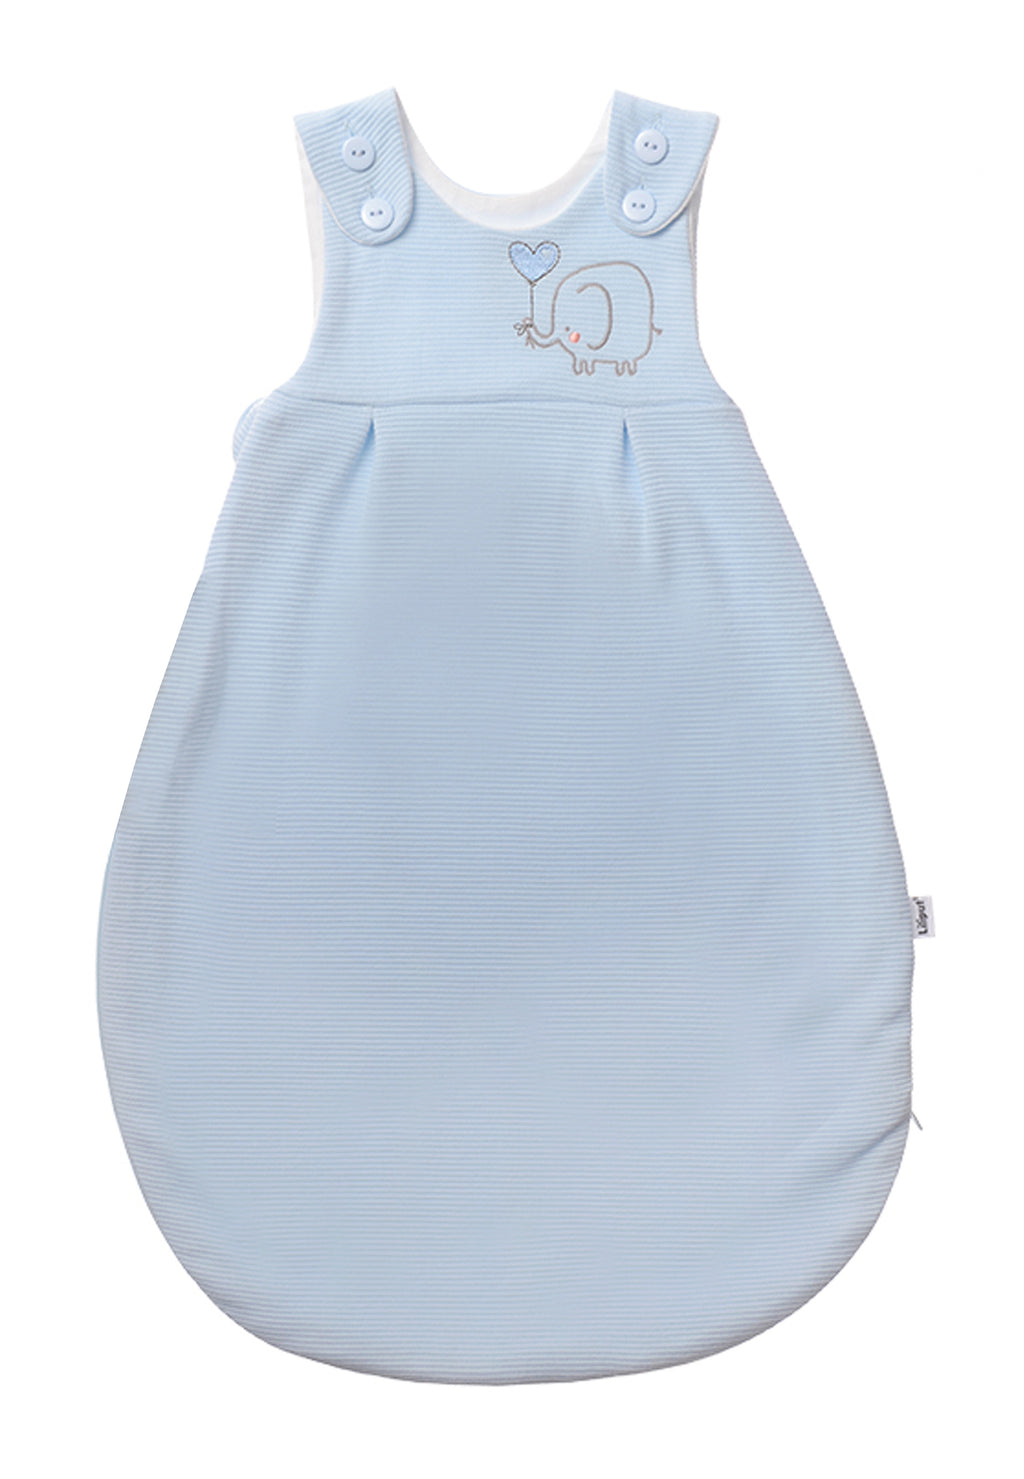 Schlafsack für Babys in unterschiedlichen Längen mit Knöpfen und Reißverschluss an der Seite. Design:  hellblau mit Elefanten Stickerei.